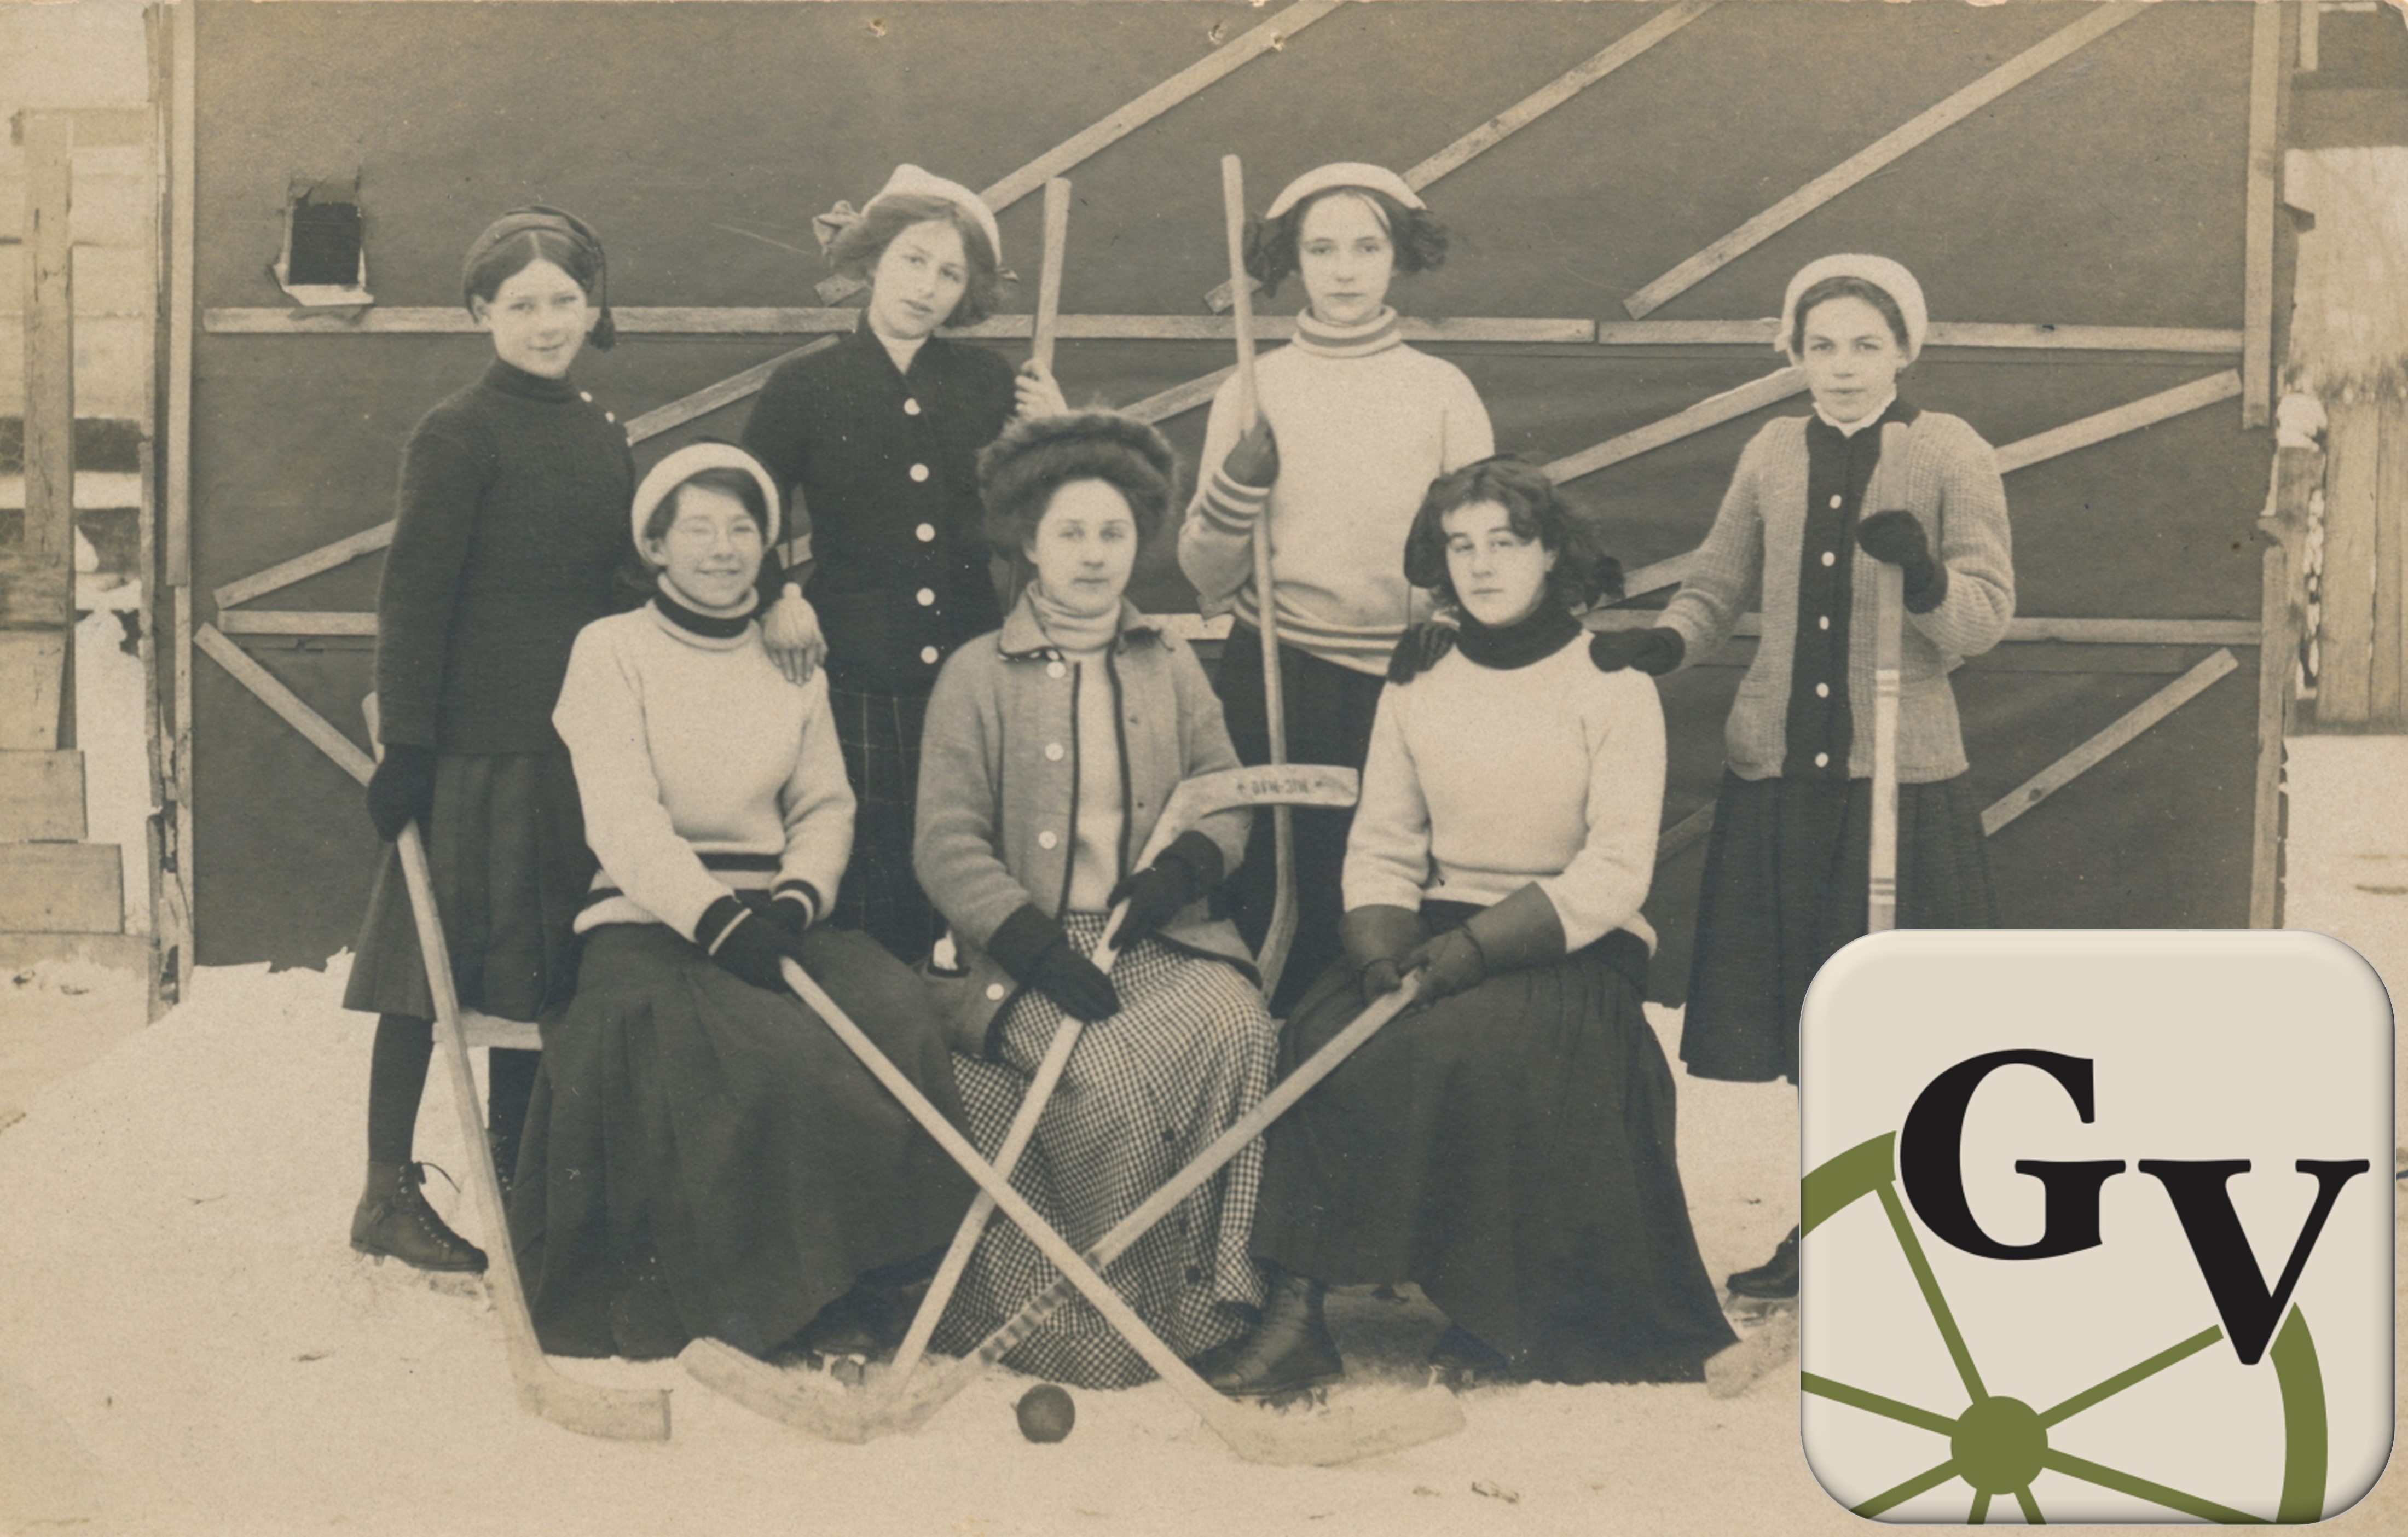 Sutton girls hockey team with Georgina Village app logo